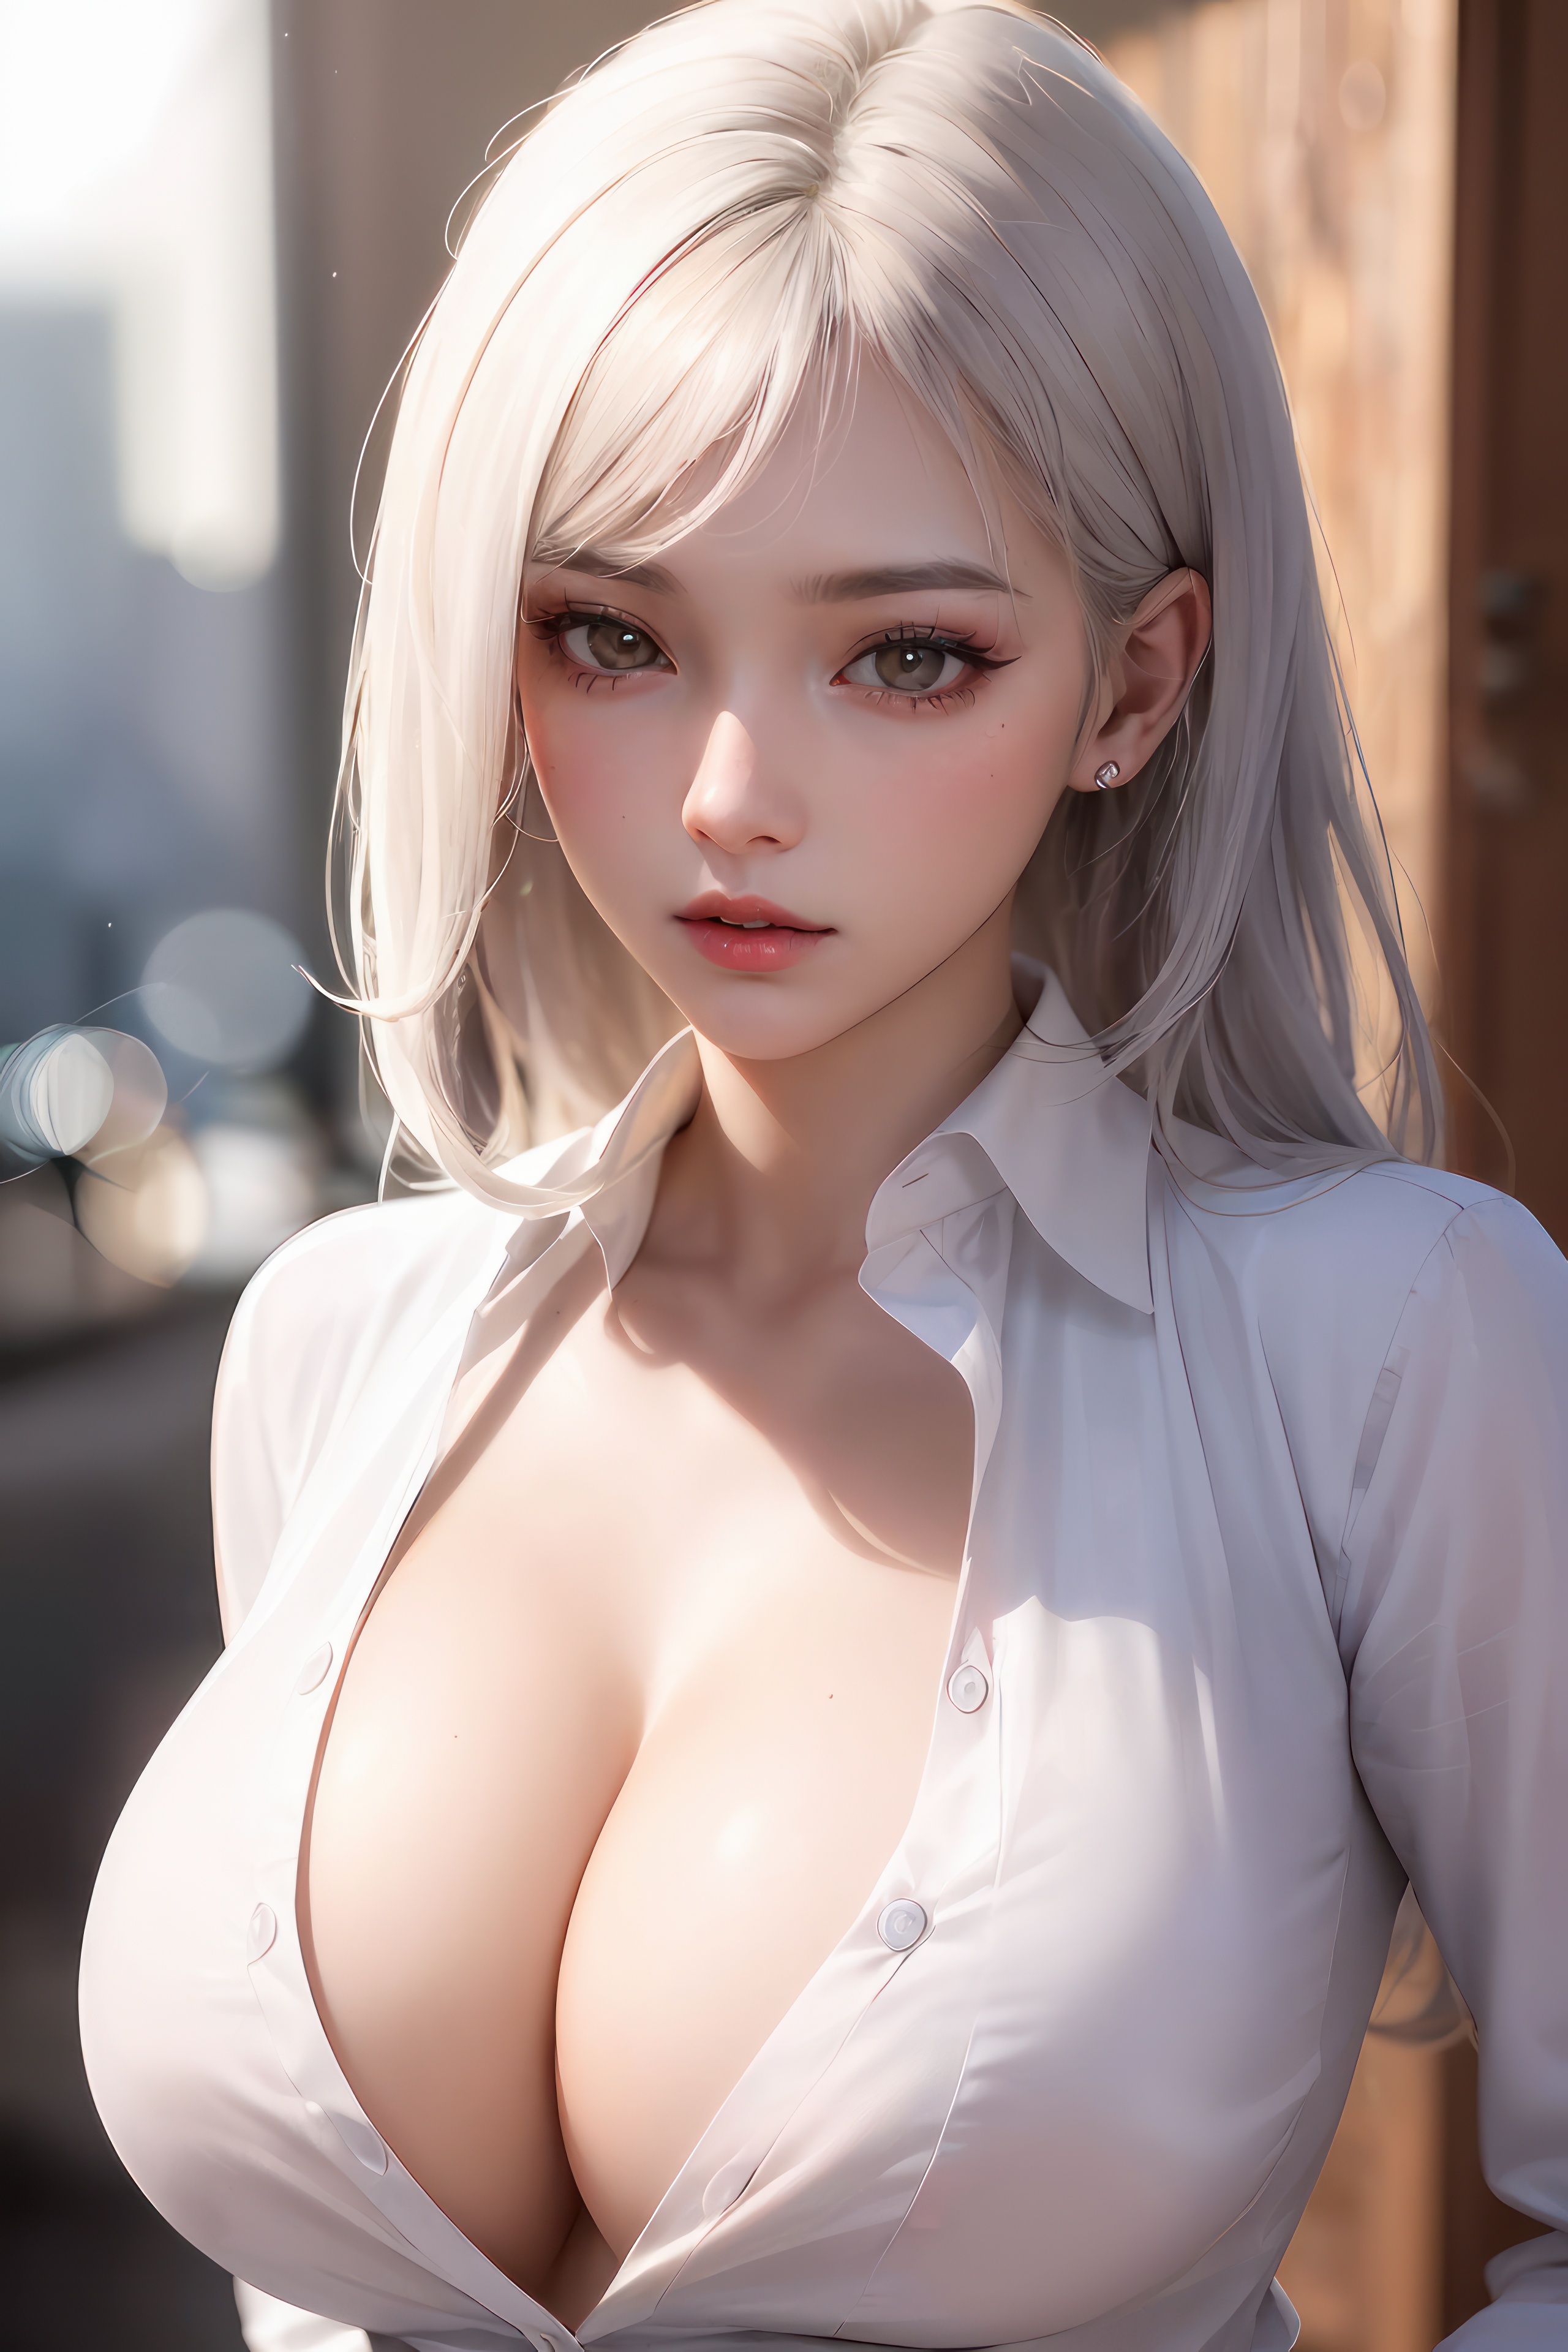 Stunning asian girl in white blouse